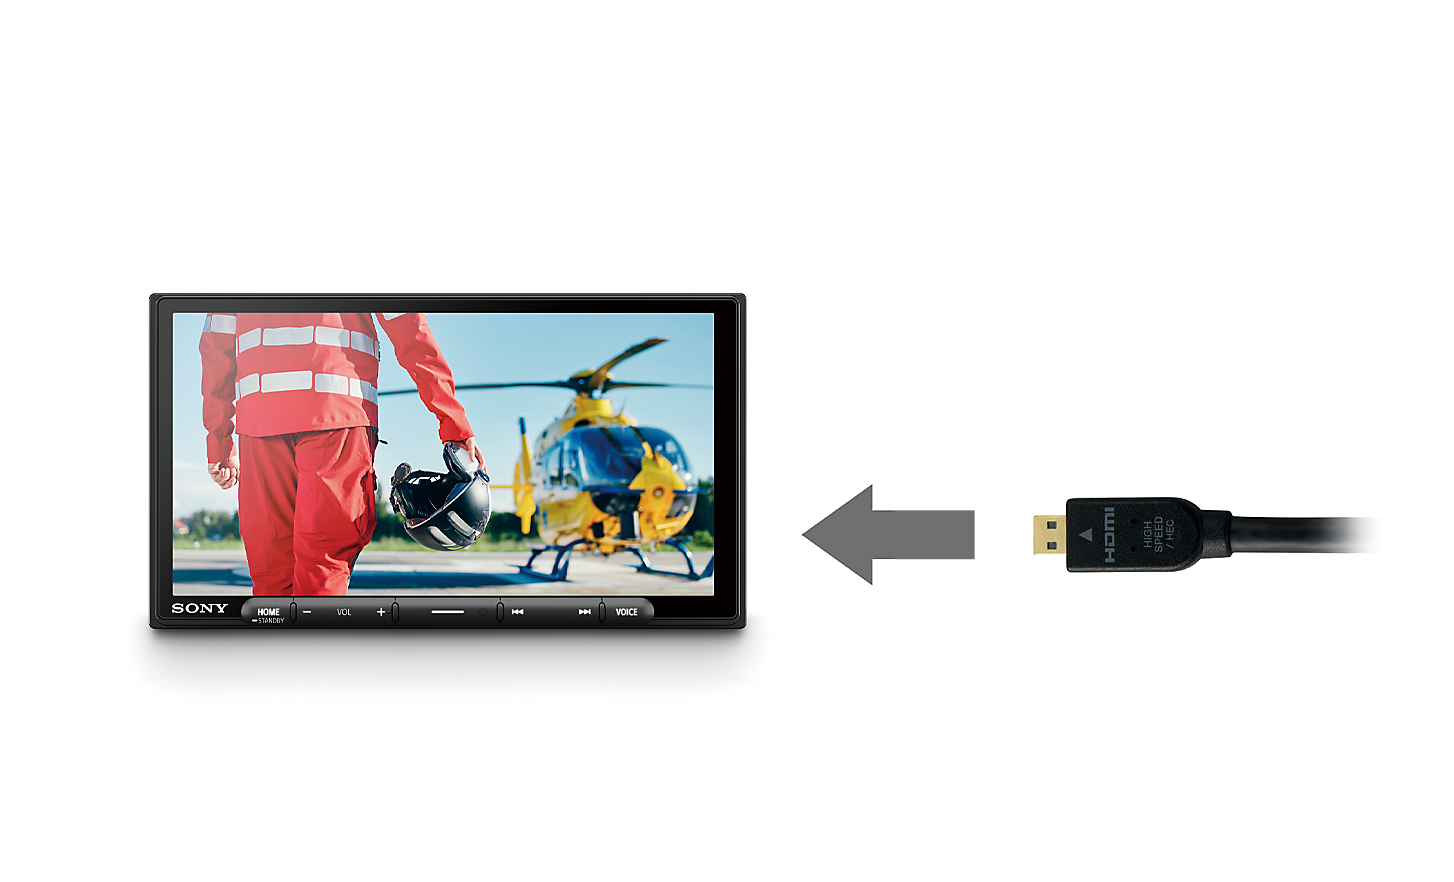 Slika HDMI kabla sa strelicom koja pokazuje na XAV-AX6050 sa pilotom i helikopterom na ekranu